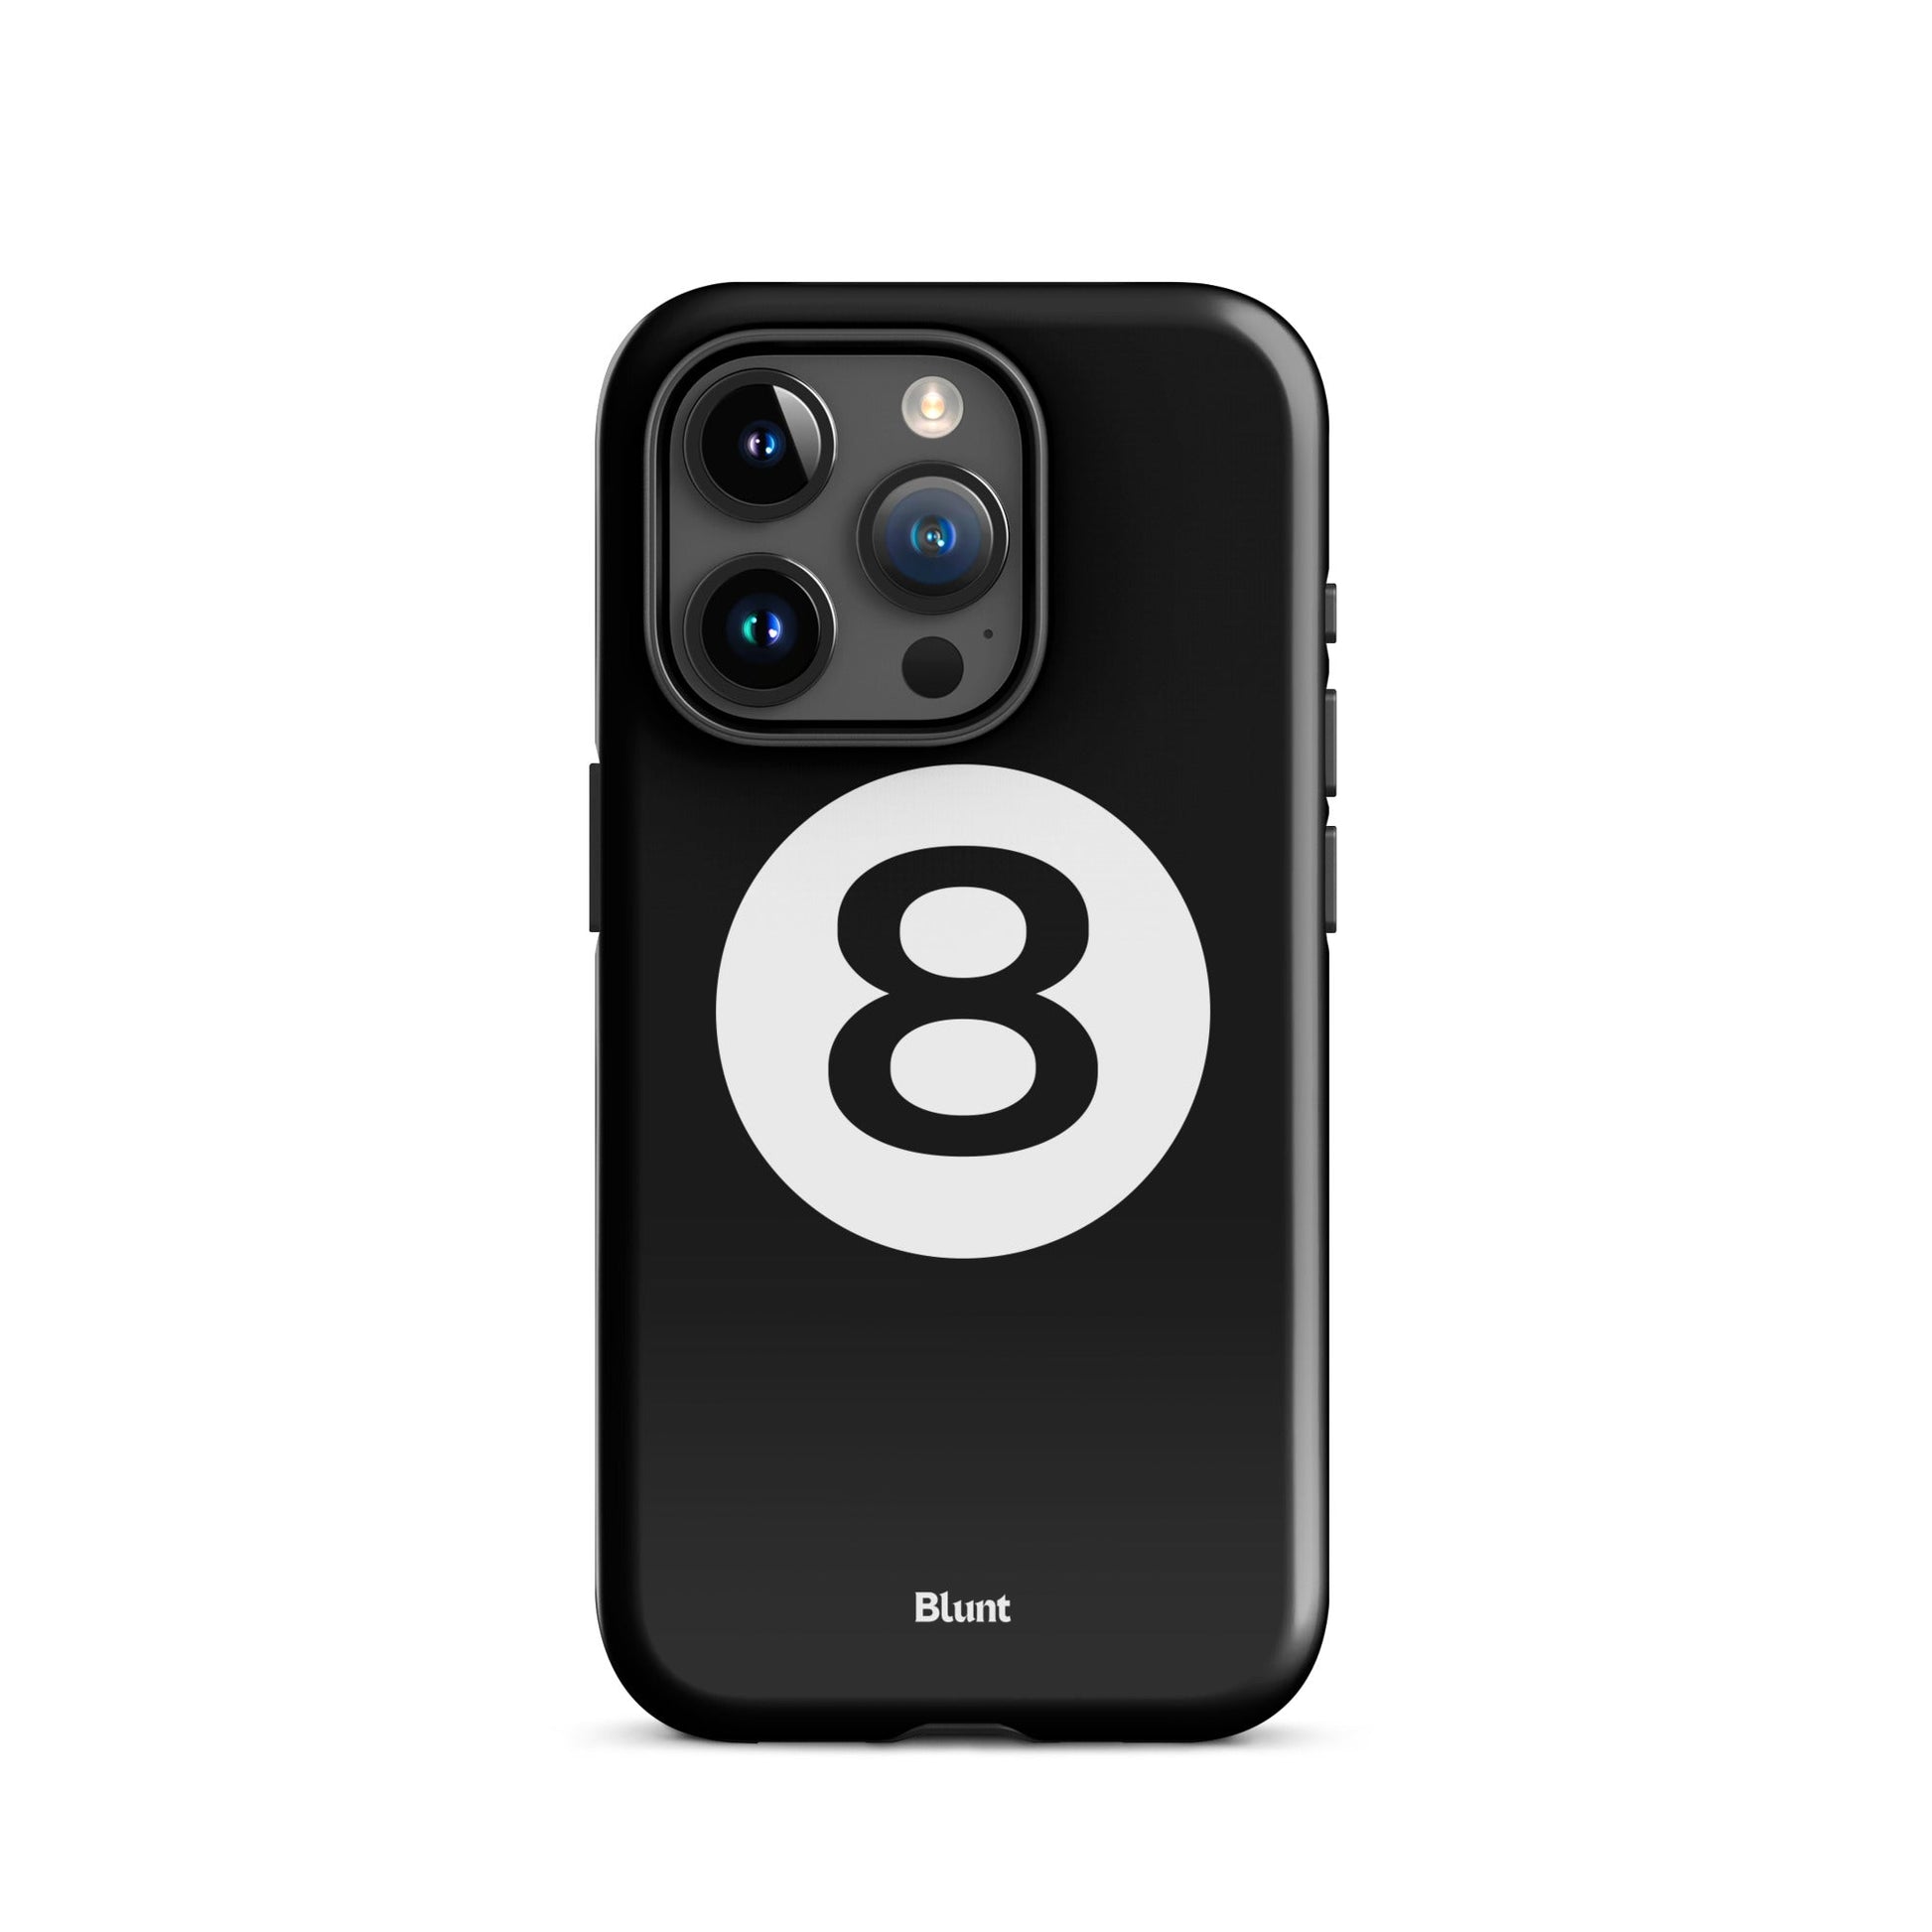 Magic 8 iPhone Case - blunt cases